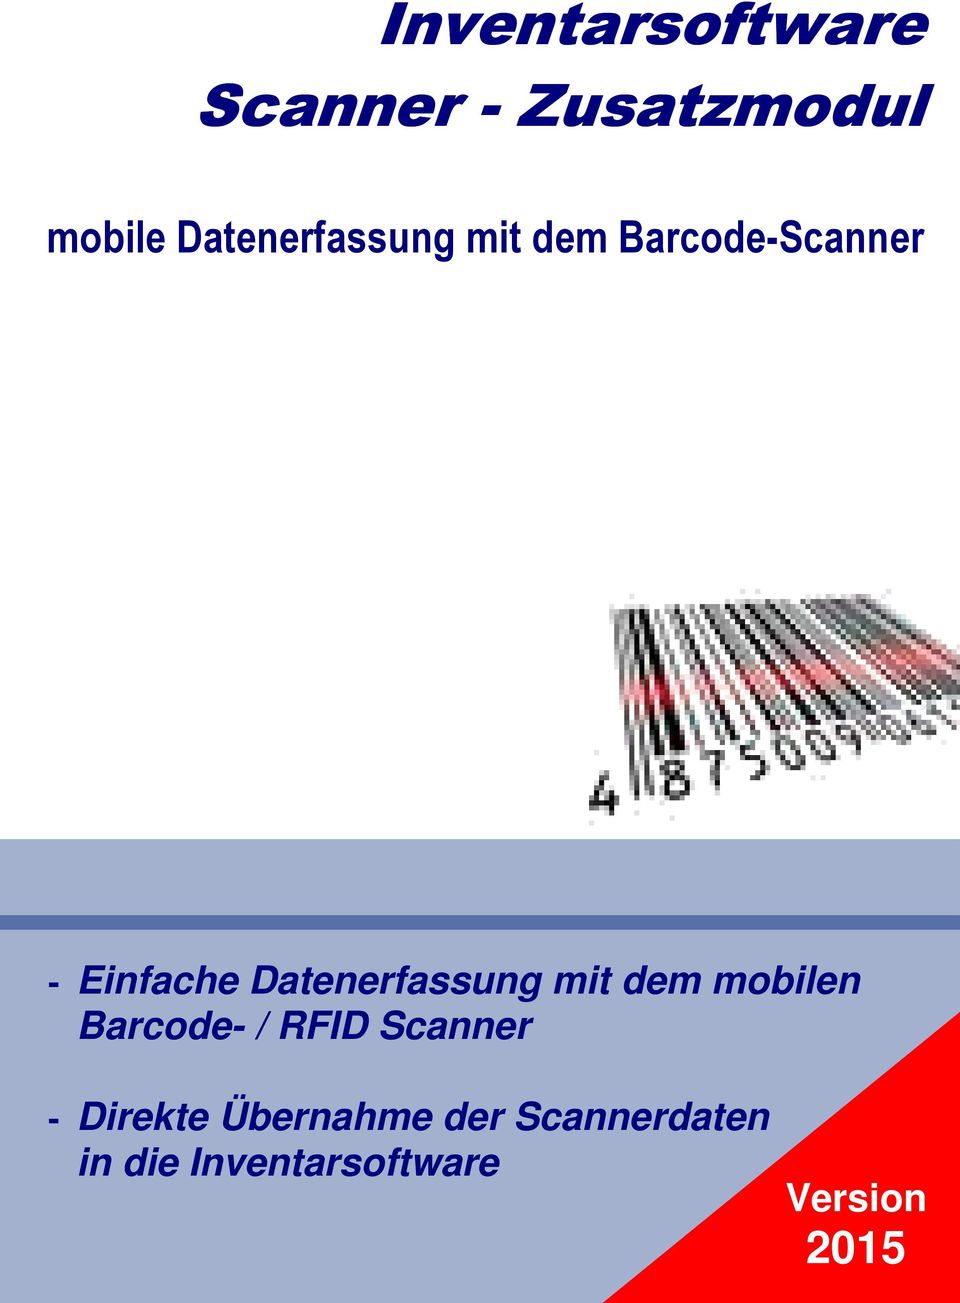 Datenerfassung mit dem mobilen Barcode- / RFID Scanner